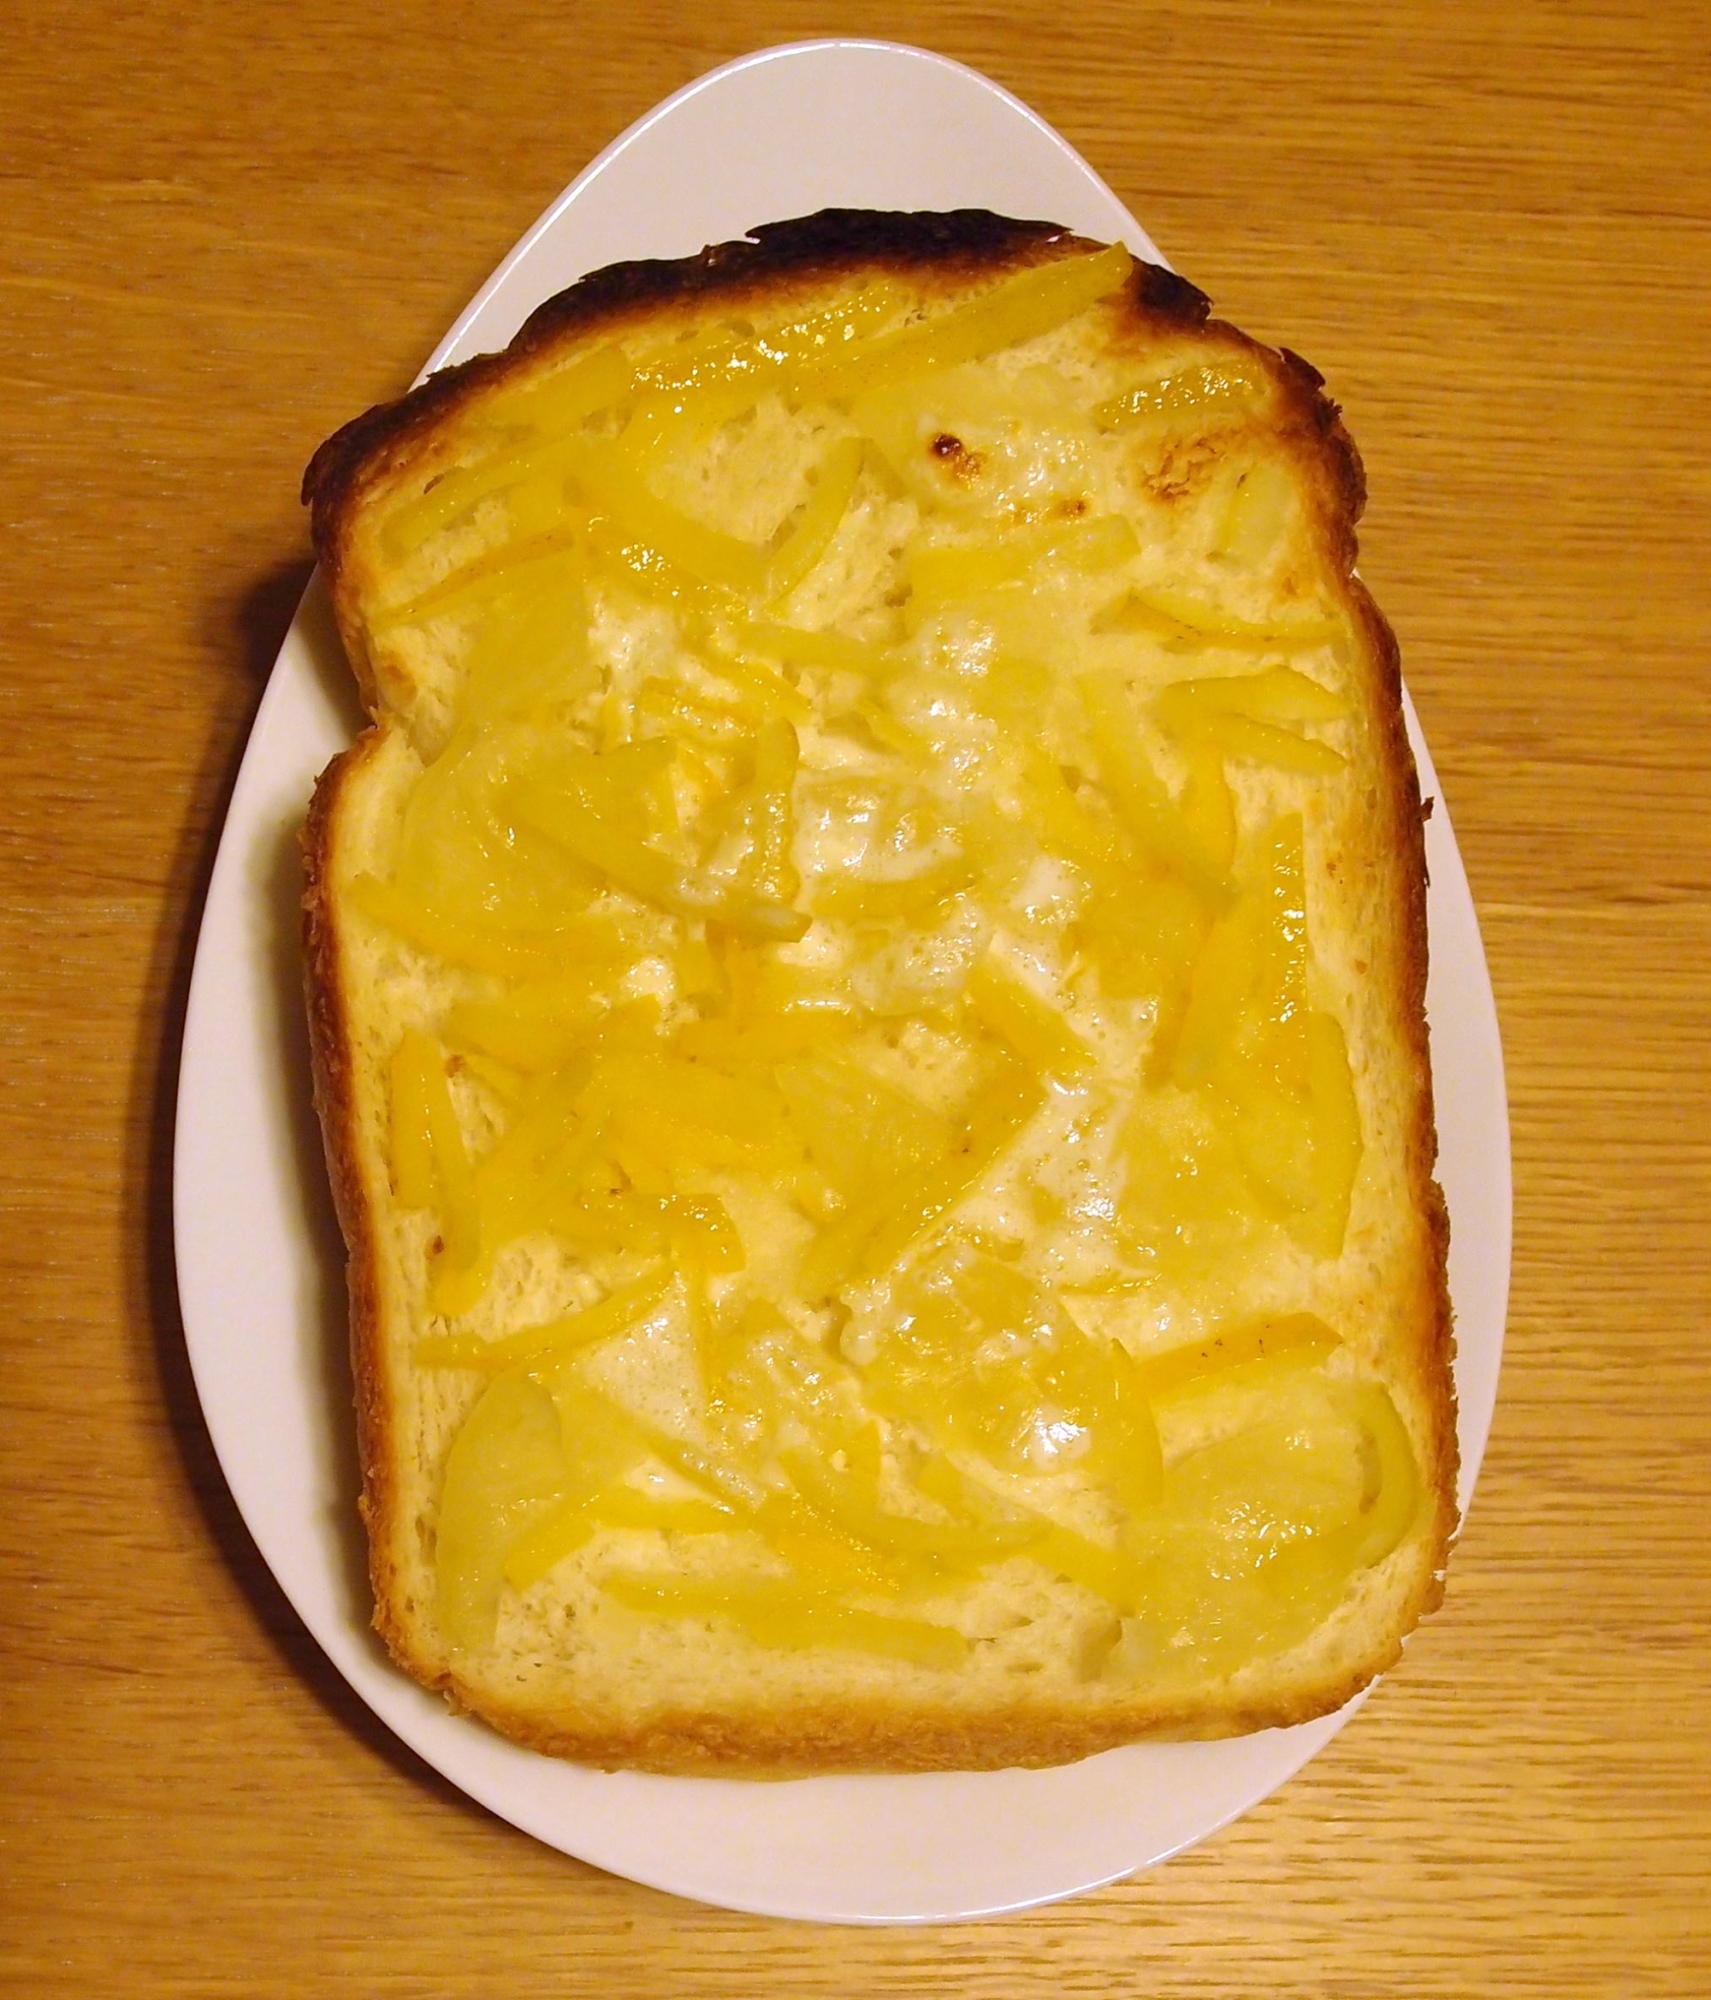 柚子練乳バタートースト